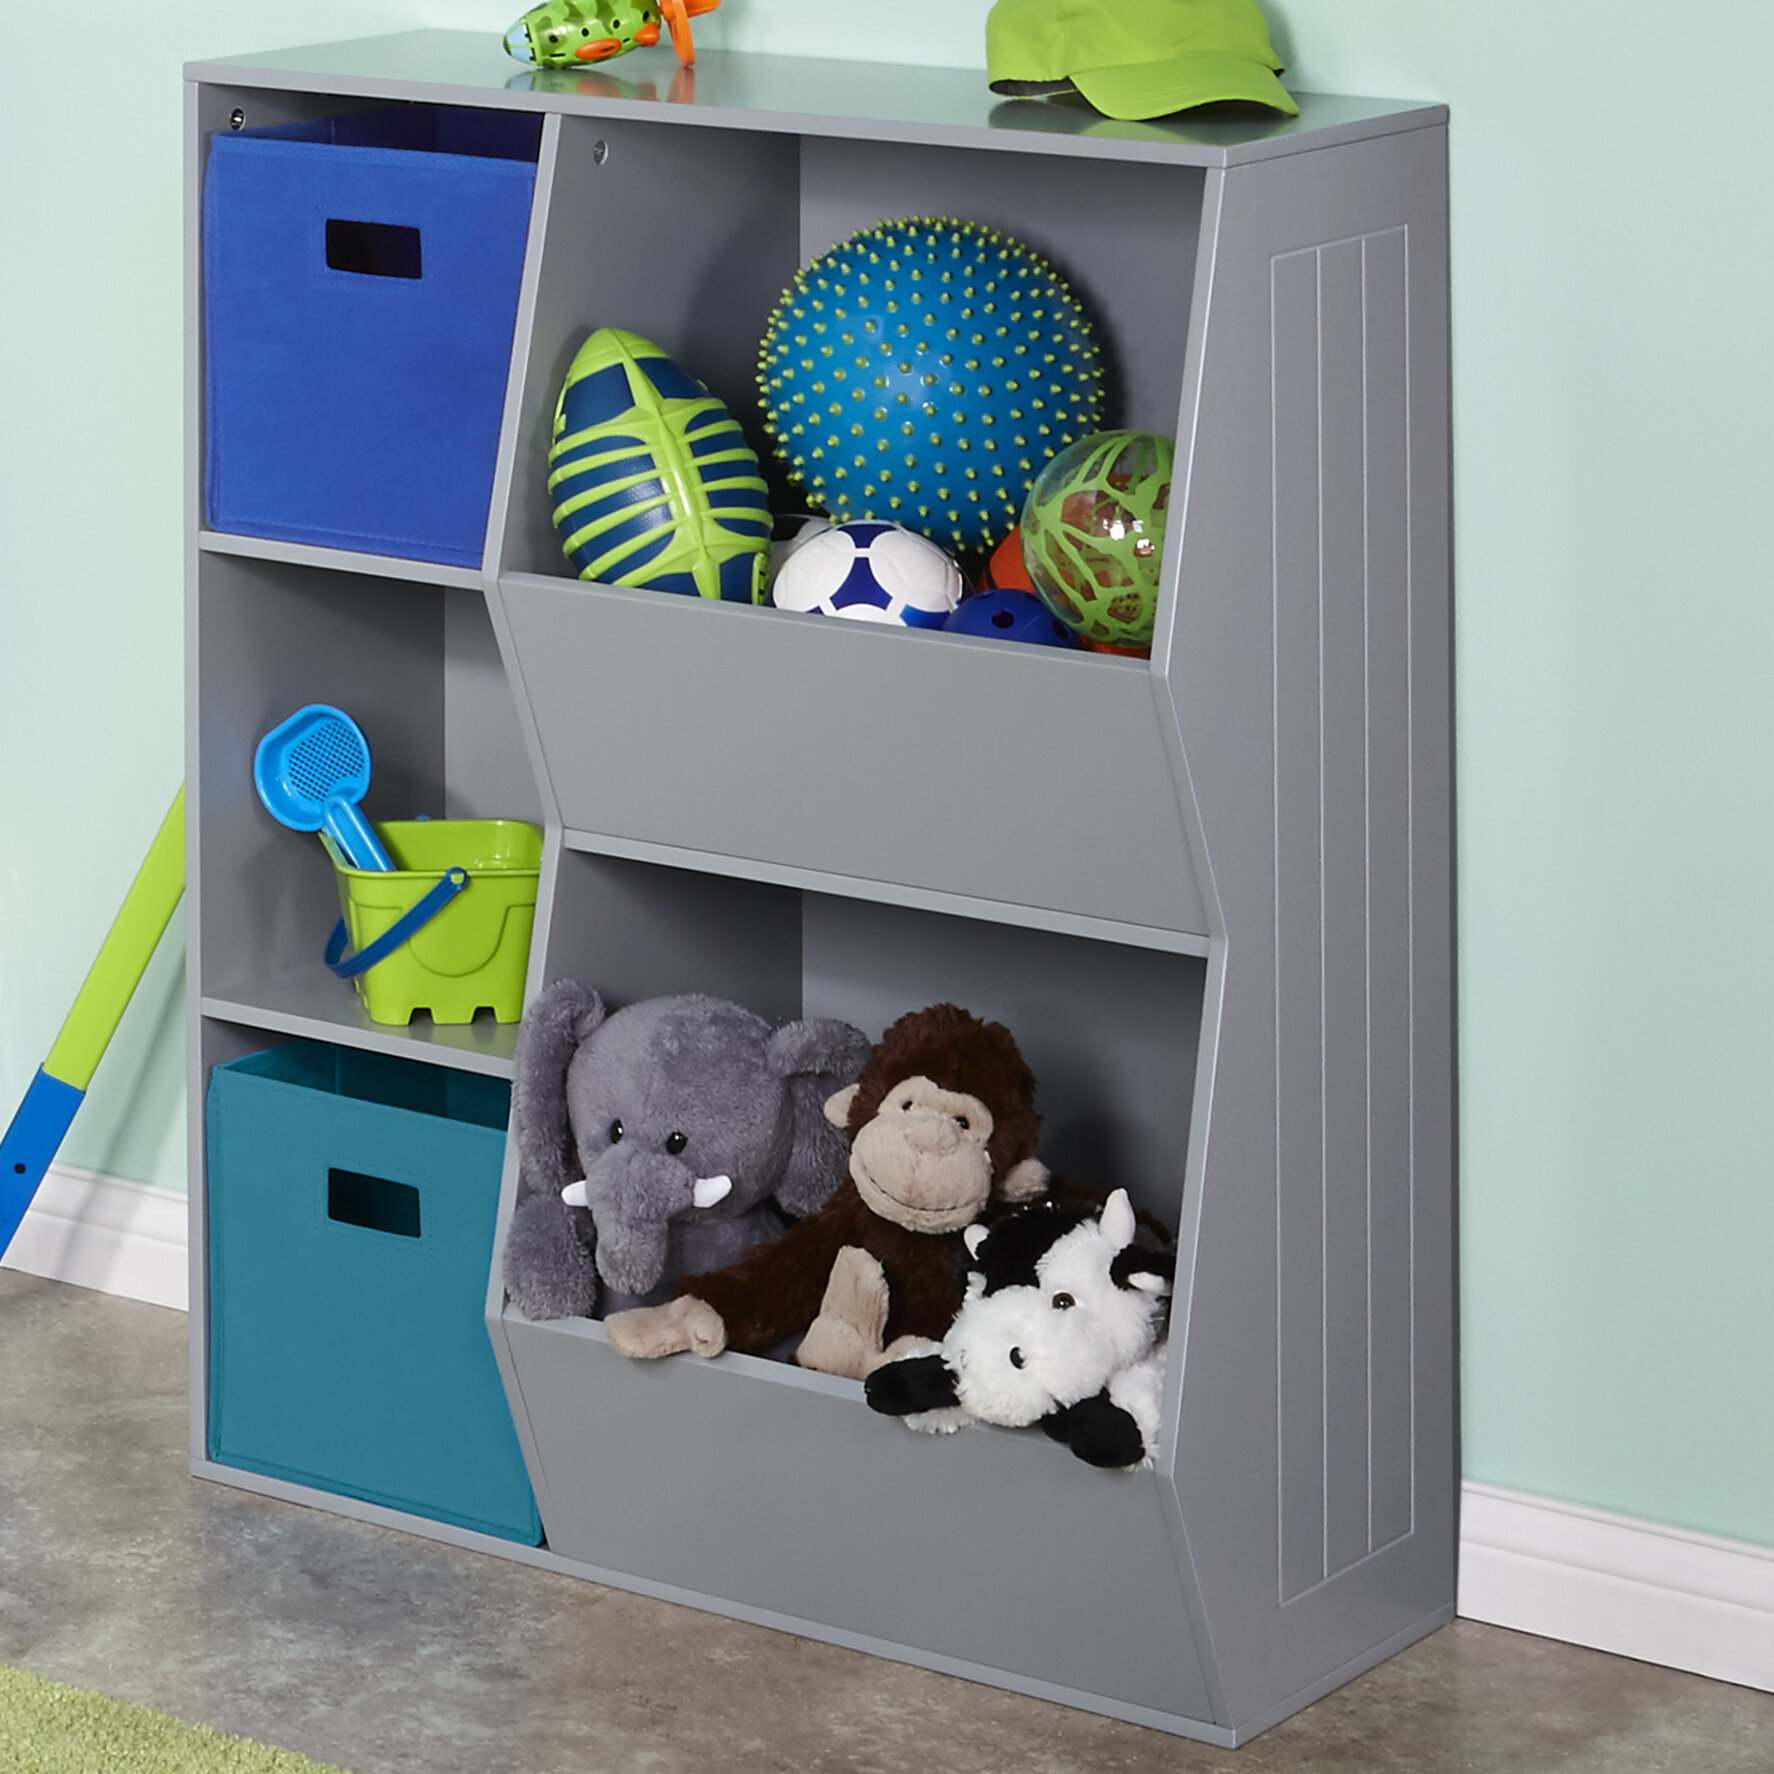 Sturdis Kids Toy Storage Organizer and Storage Bins, Size: Small, Gray